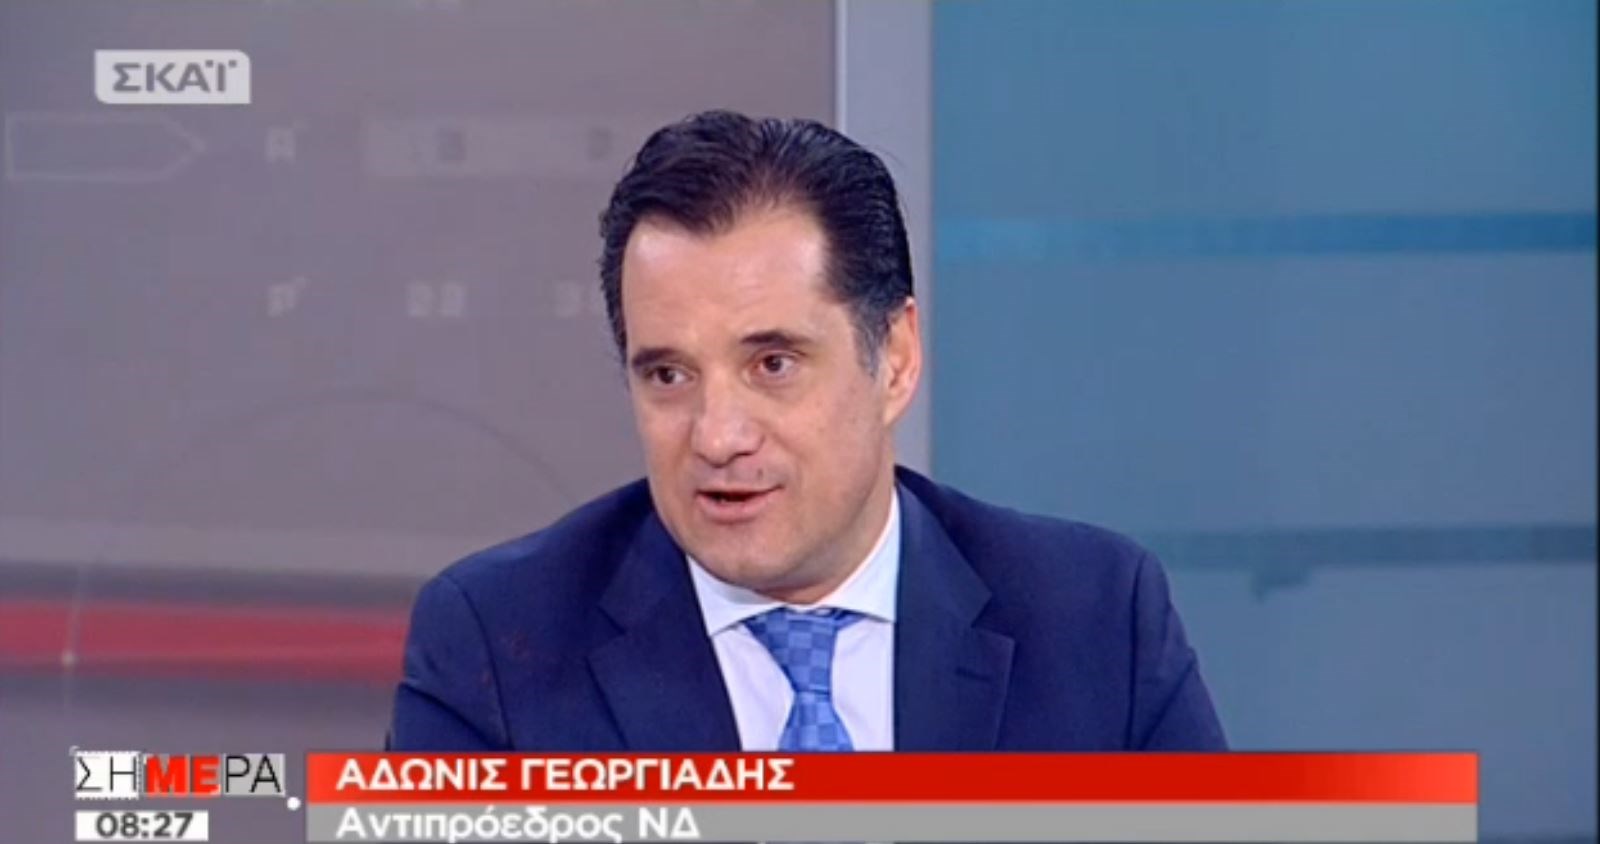 Γεωργιάδης: Ο Τσίπρας δεν διαπραγματεύεται για να λύσει το Σκοπιανό, αλλά γιατί θέλει να προκαλέσει προβλήματα στη ΝΔ- ΒΙΝΤΕΟ